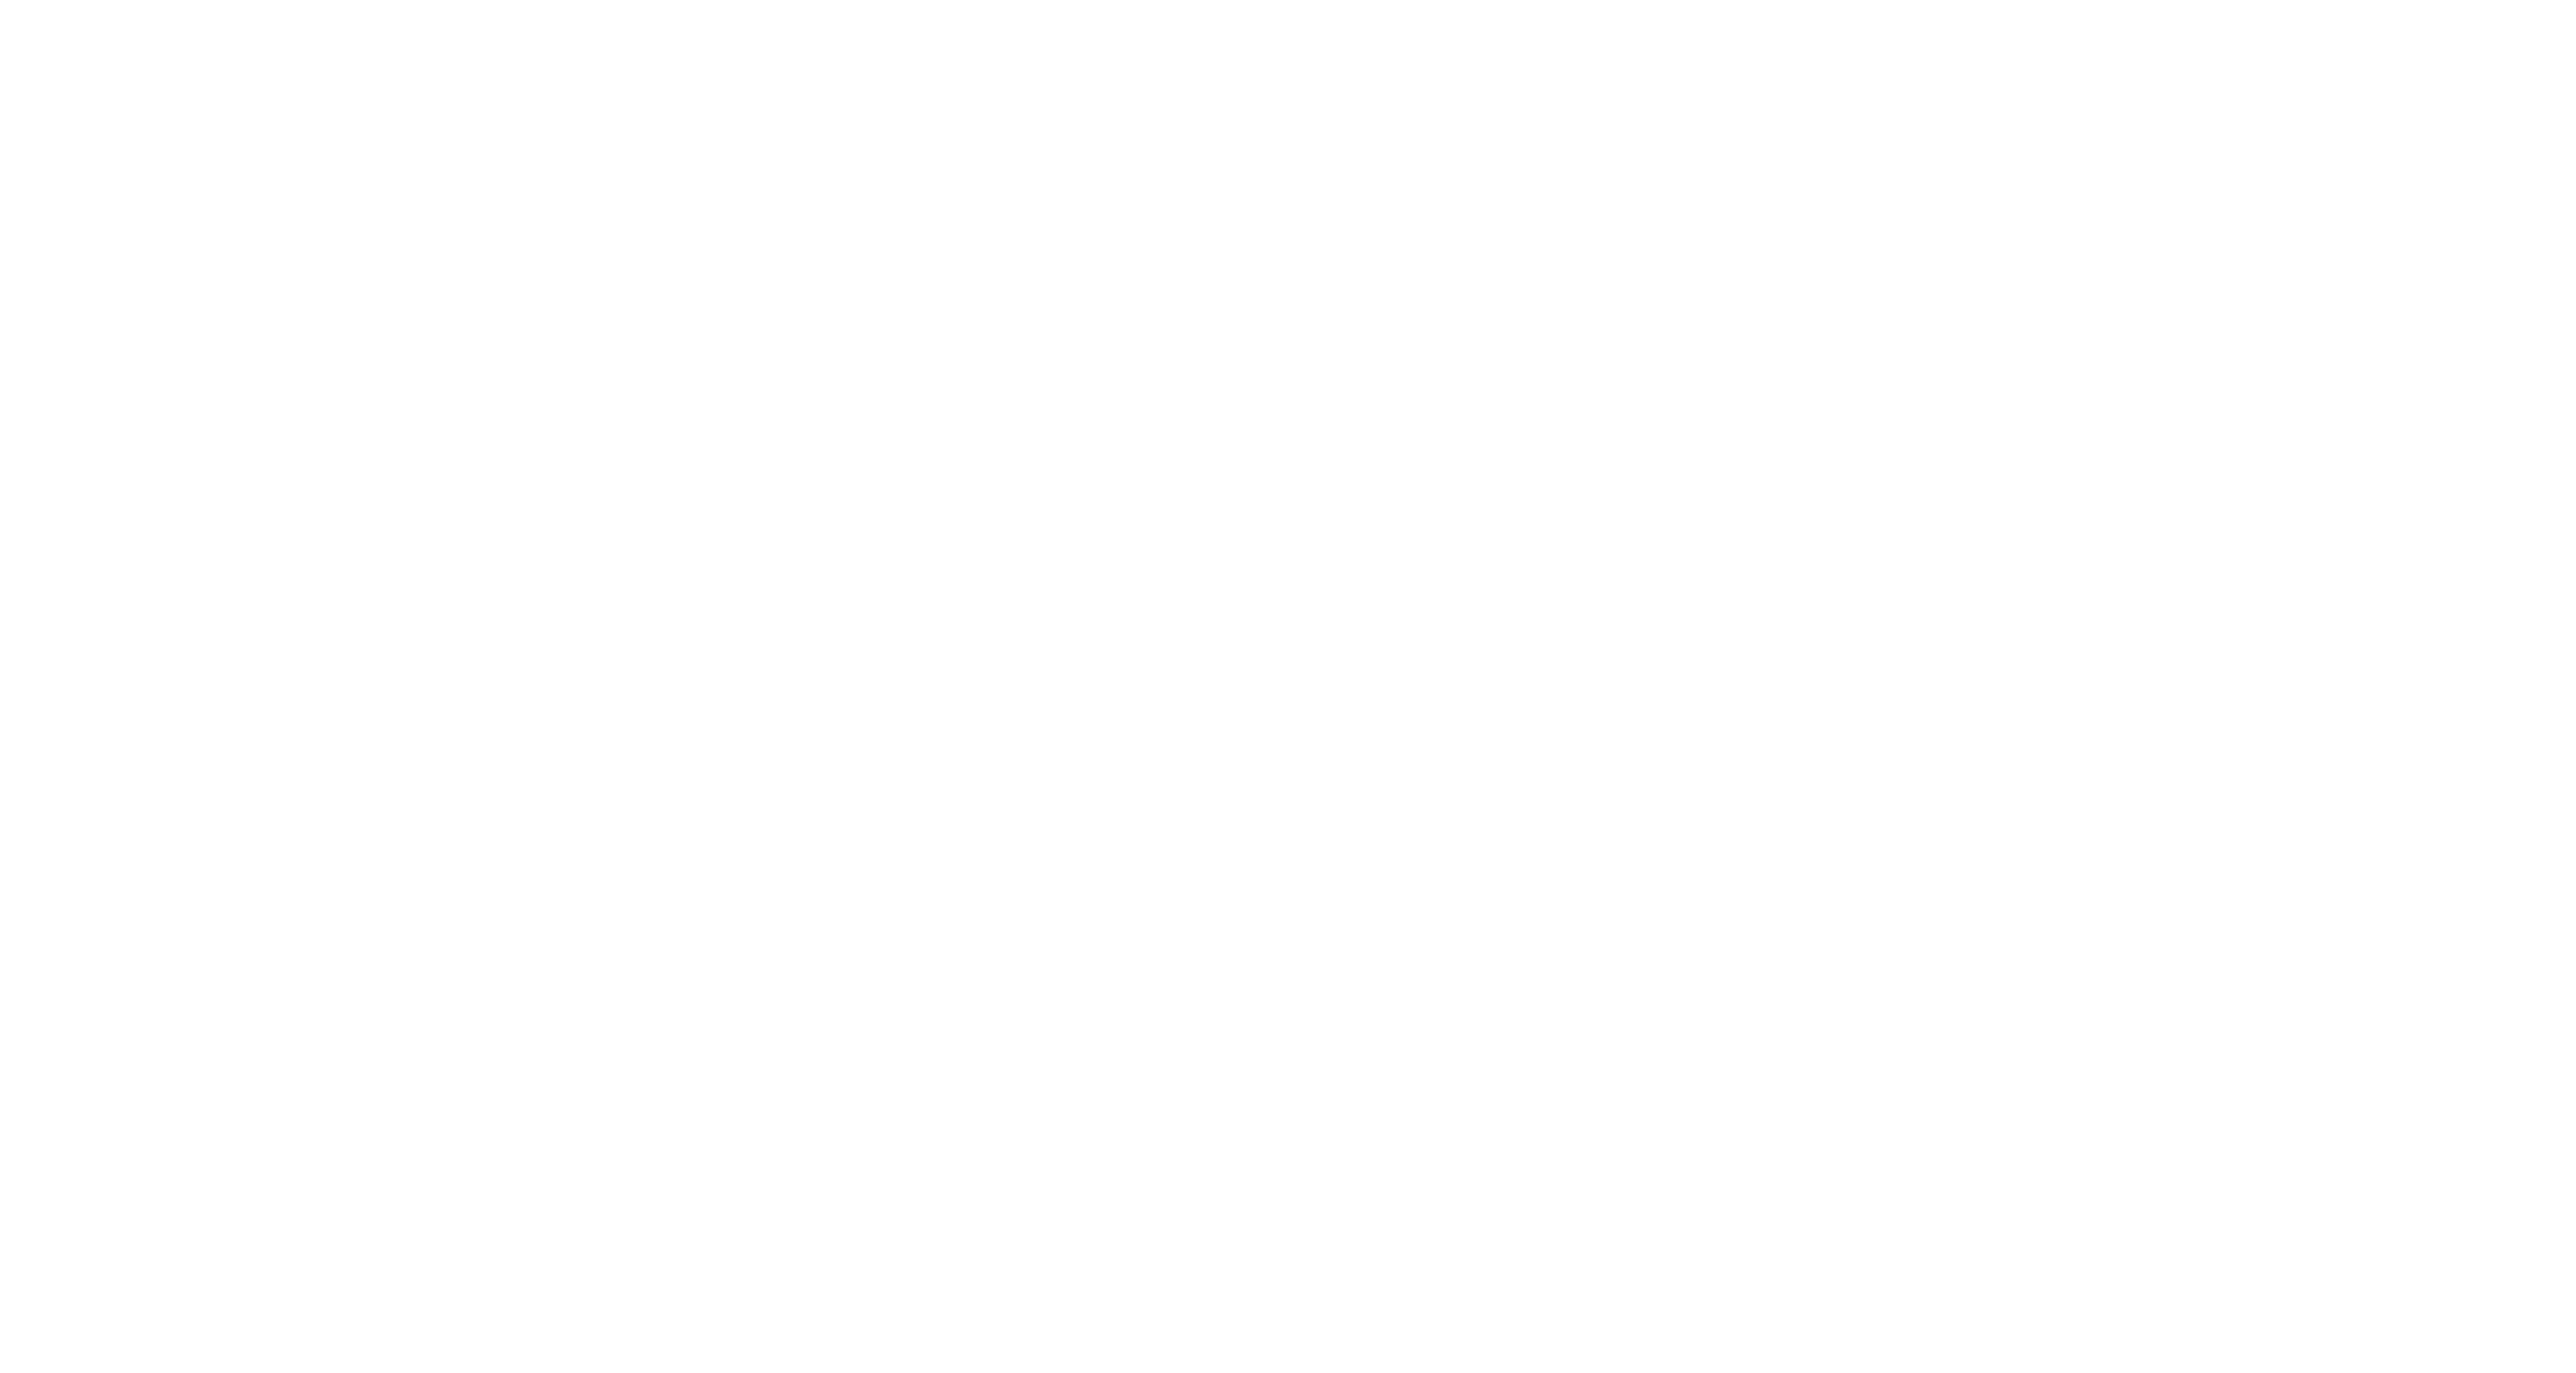 razzle rocket league fan rewards